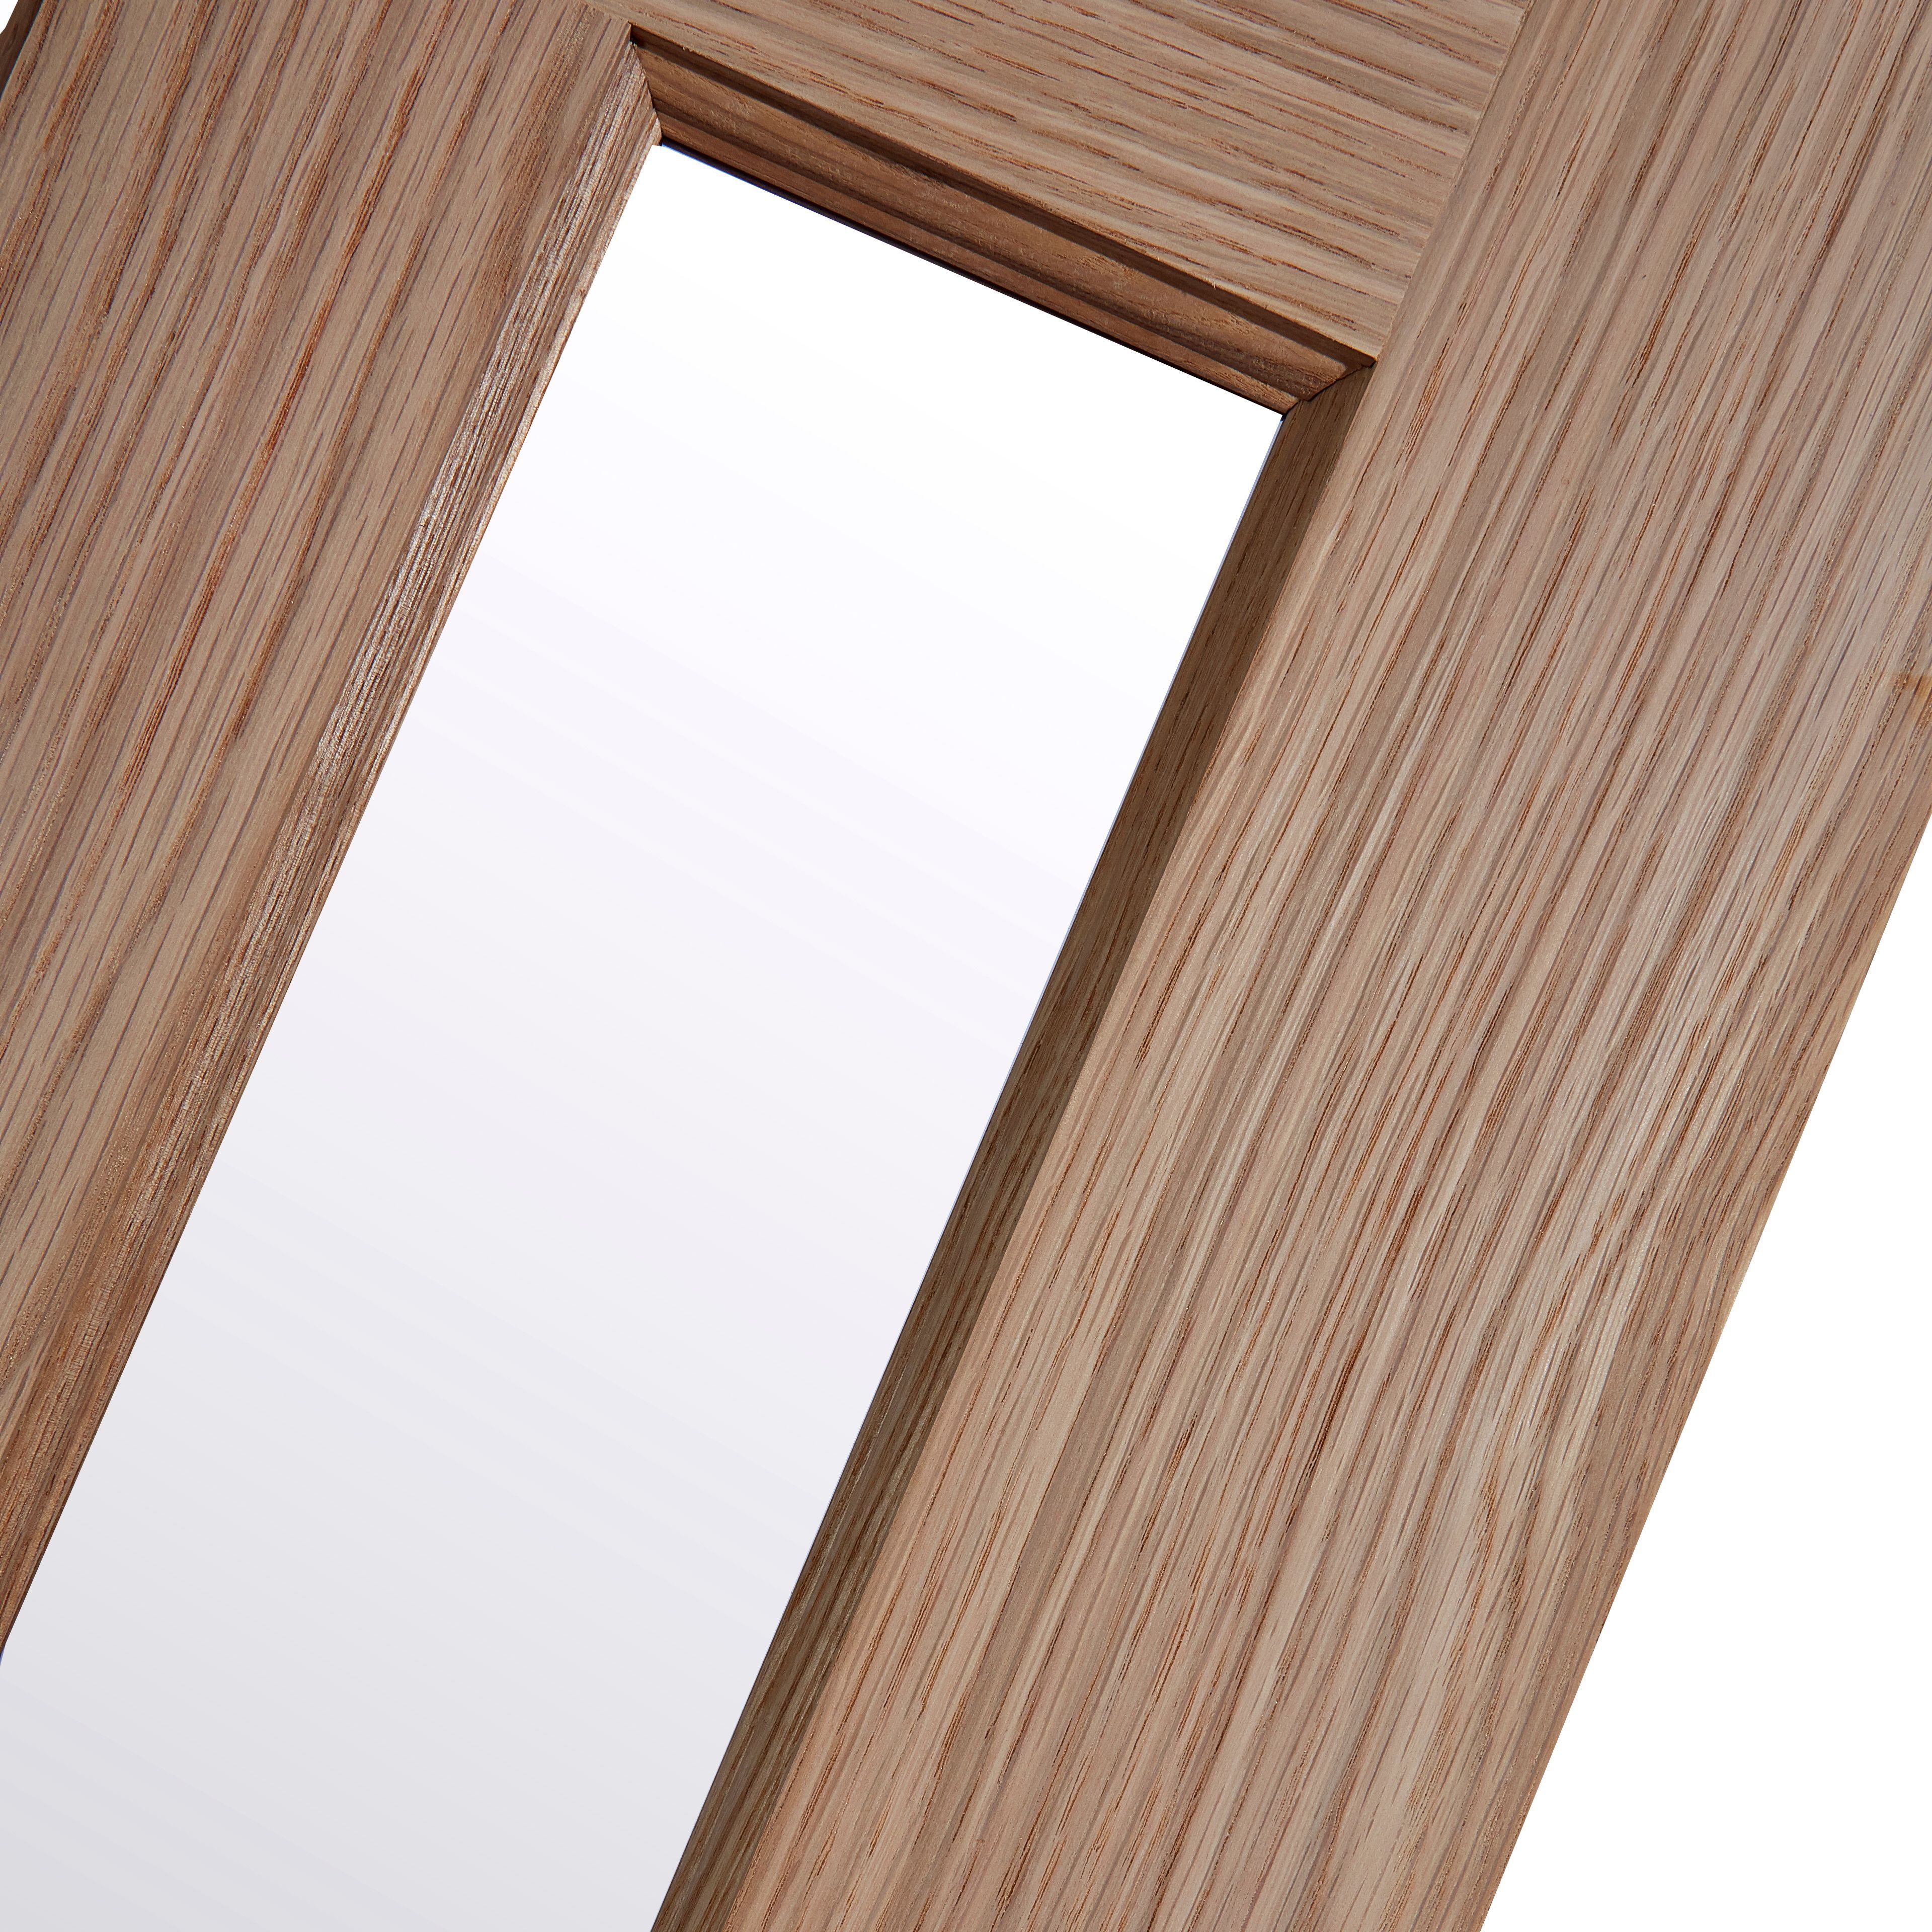 Vertical 3 panel Obscure Glazed Contemporary White oak veneer Internal Door, (H)1981mm (W)762mm (T)35mm